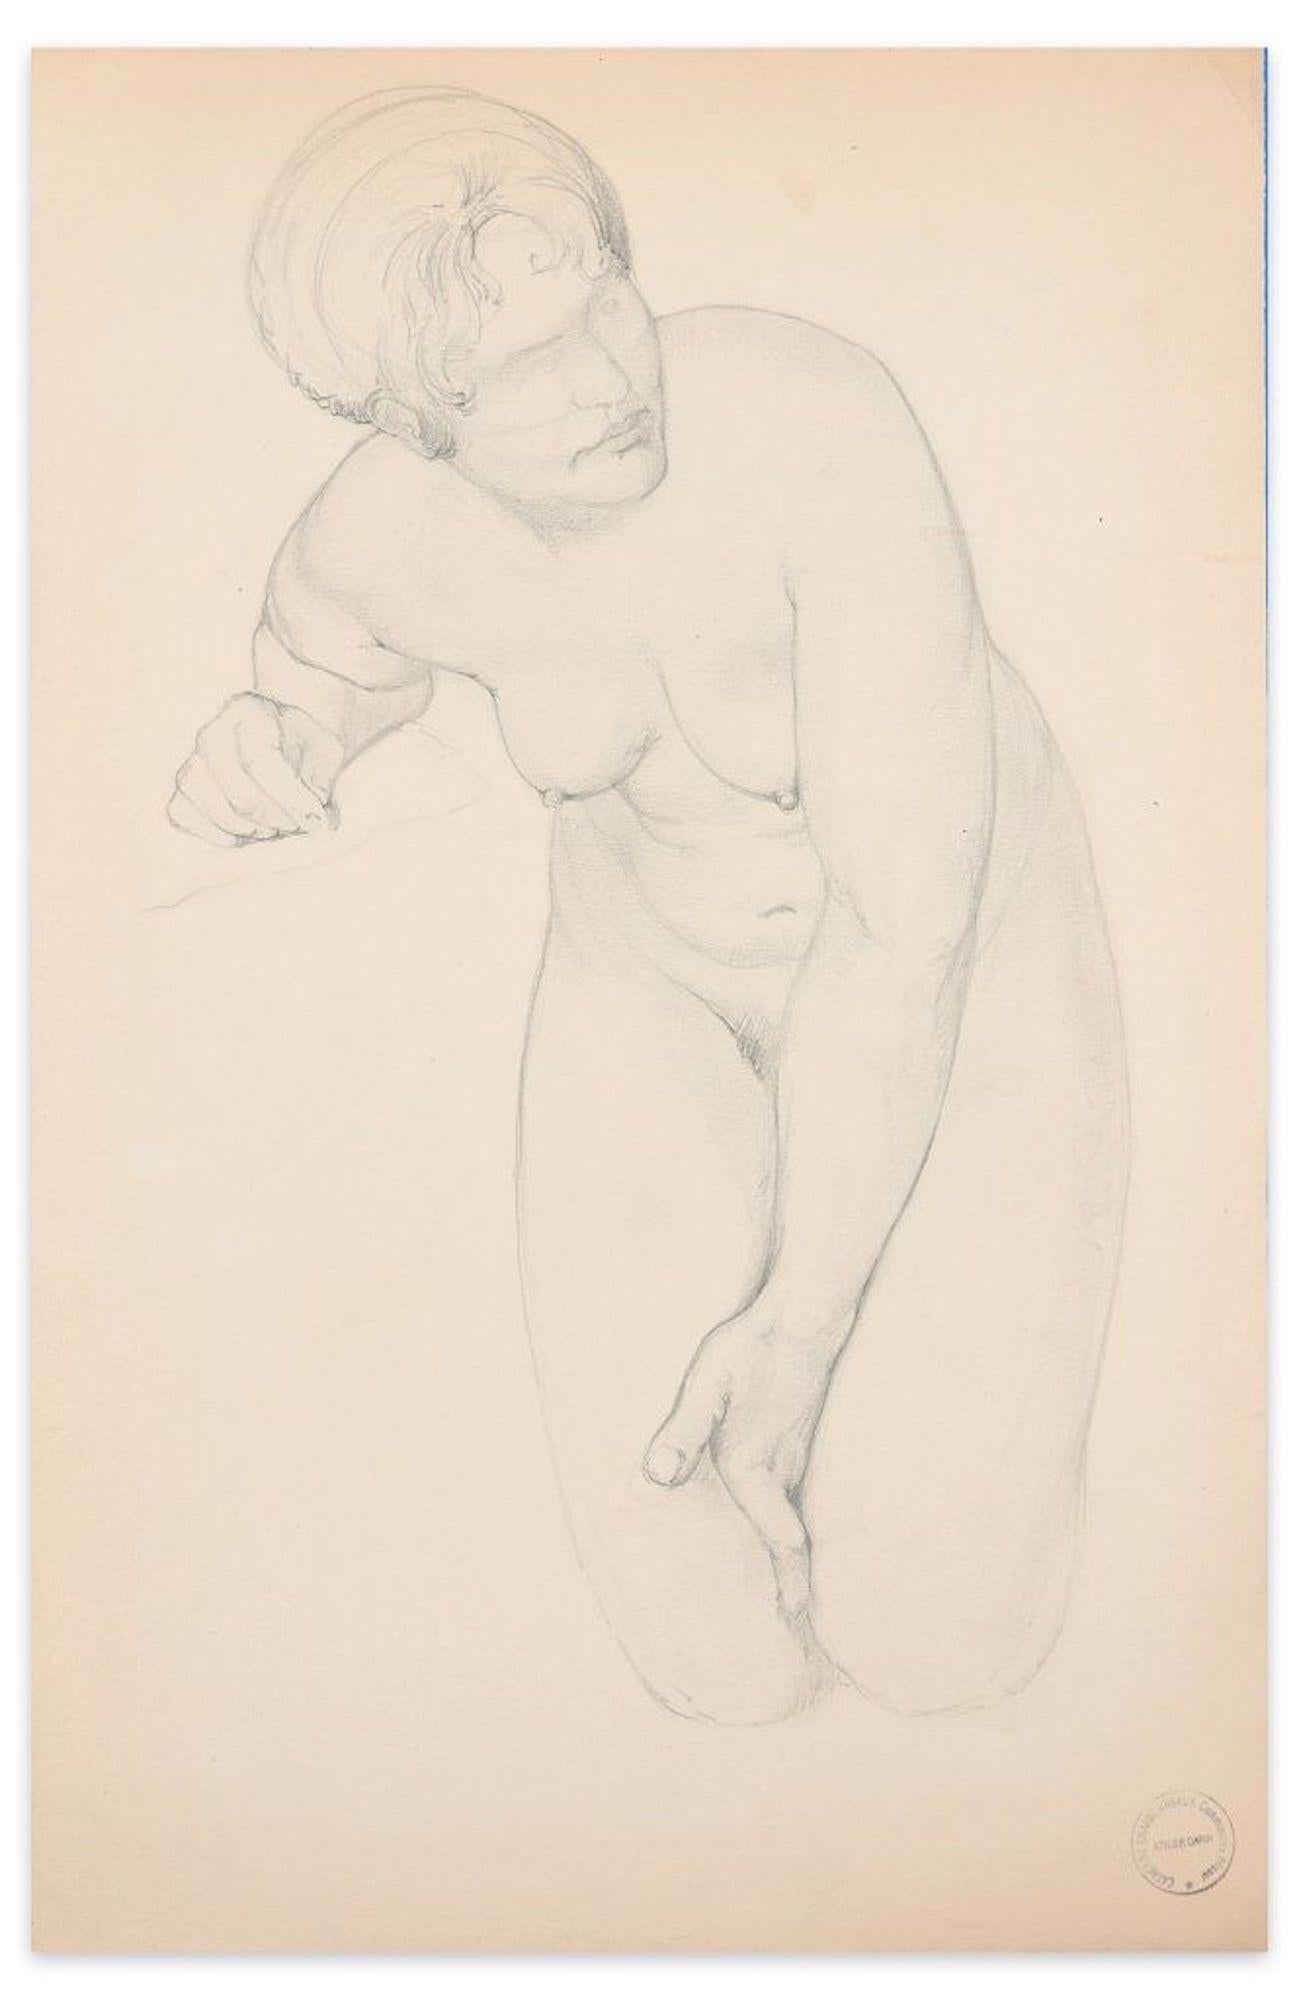 Der kniende Akt ist eine wunderbare Original-Bleistiftzeichnung auf invoryfarbenem Papier, die der französische Künstler Paul Garin (Nizza, 1898-1963) zwischen Anfang und Mitte des XX.

Mit einem Stempel mit schwarzer Tinte in der rechten unteren